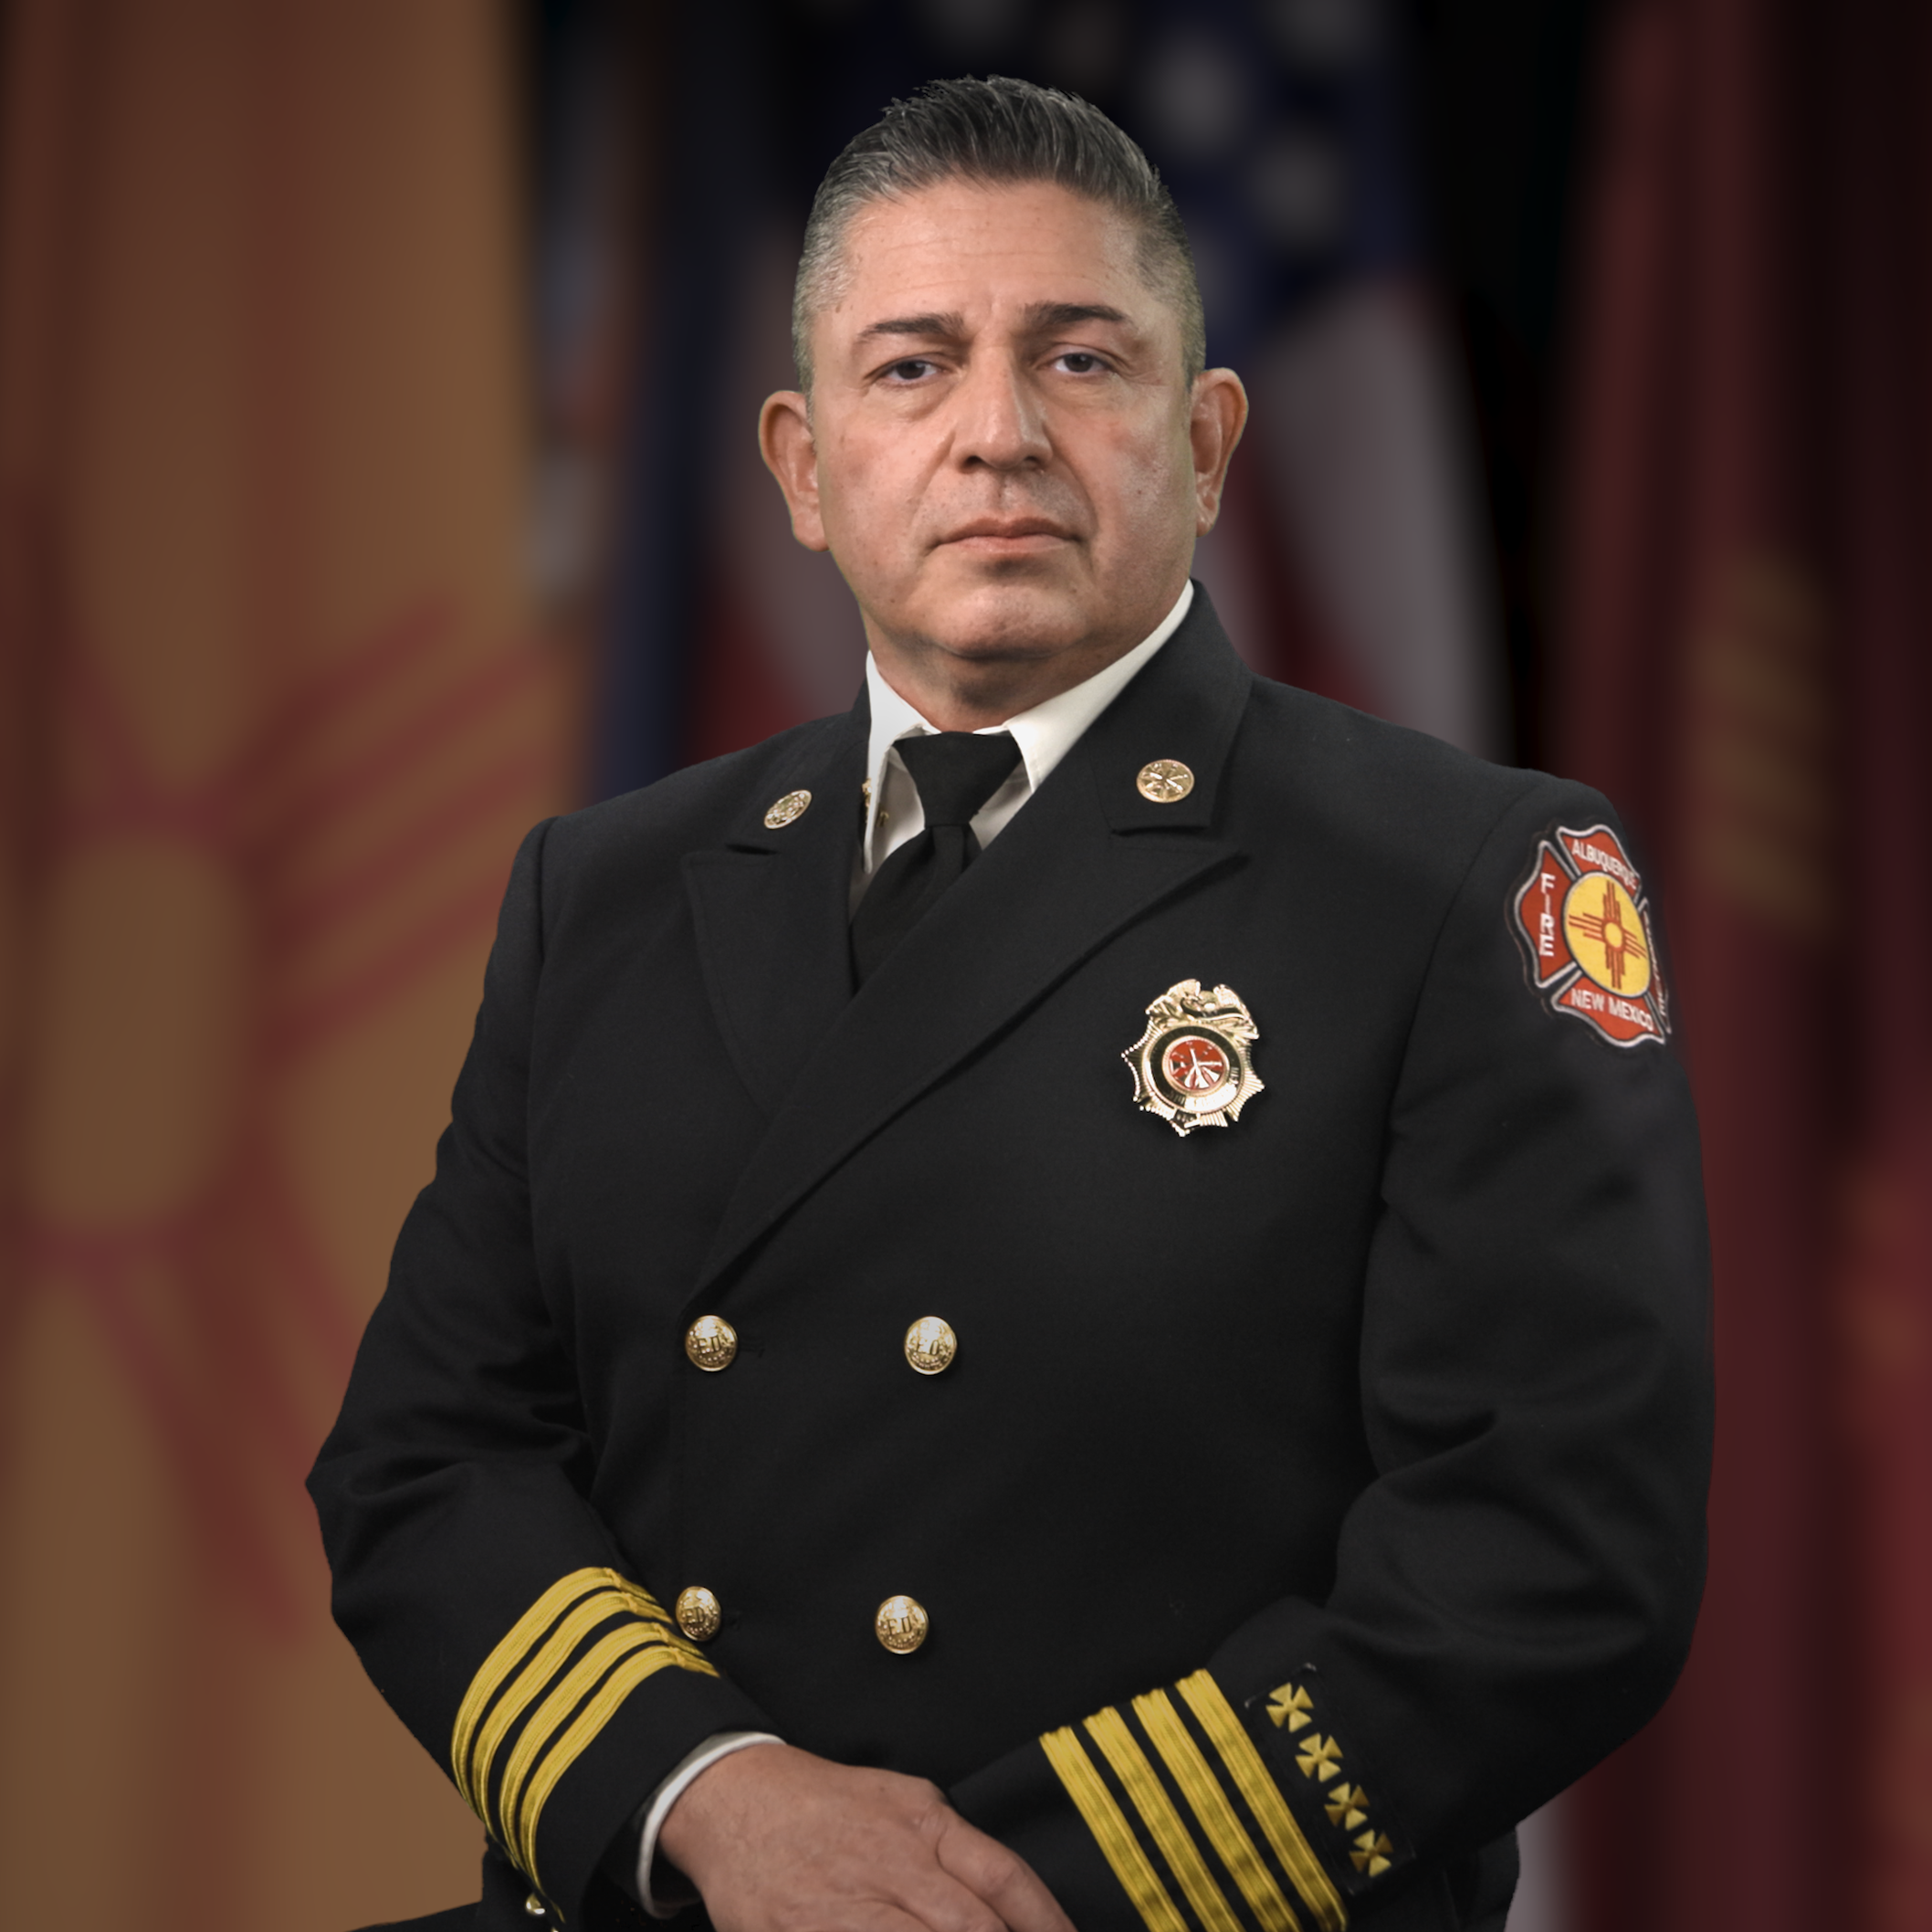 Fire Marshal, Deputy Chief Jason Garcia